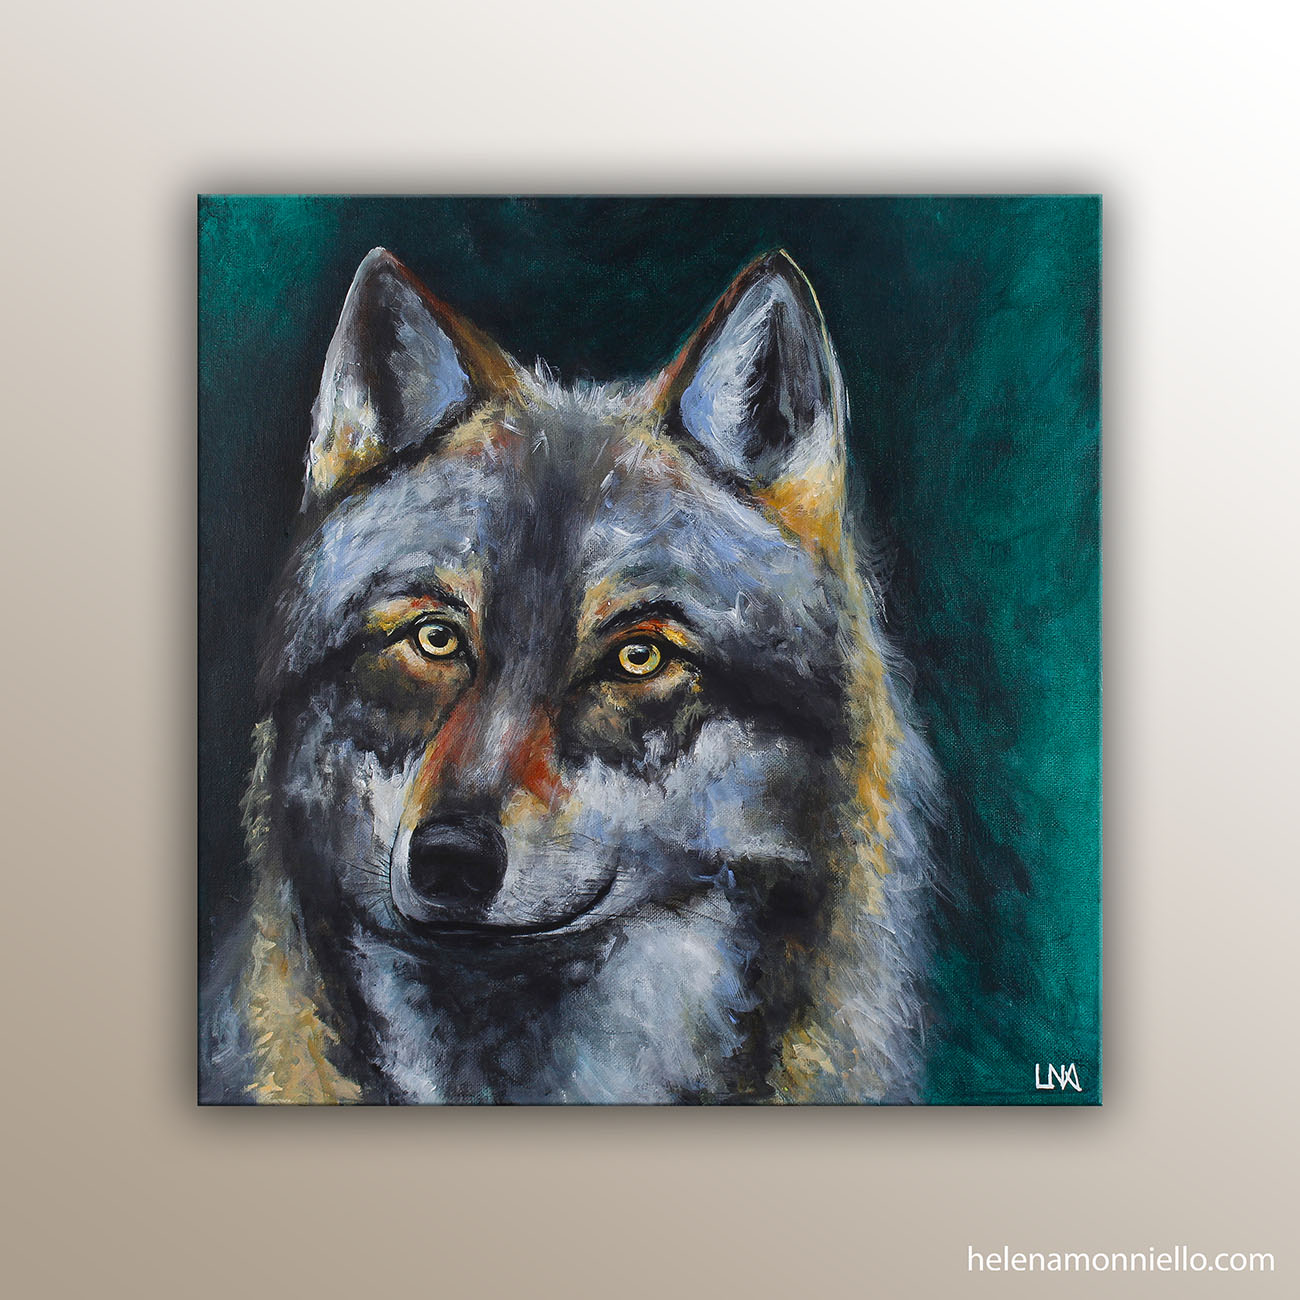 Protecteur : peinture animalière de l'artiste Helena Monniello représentant un loup